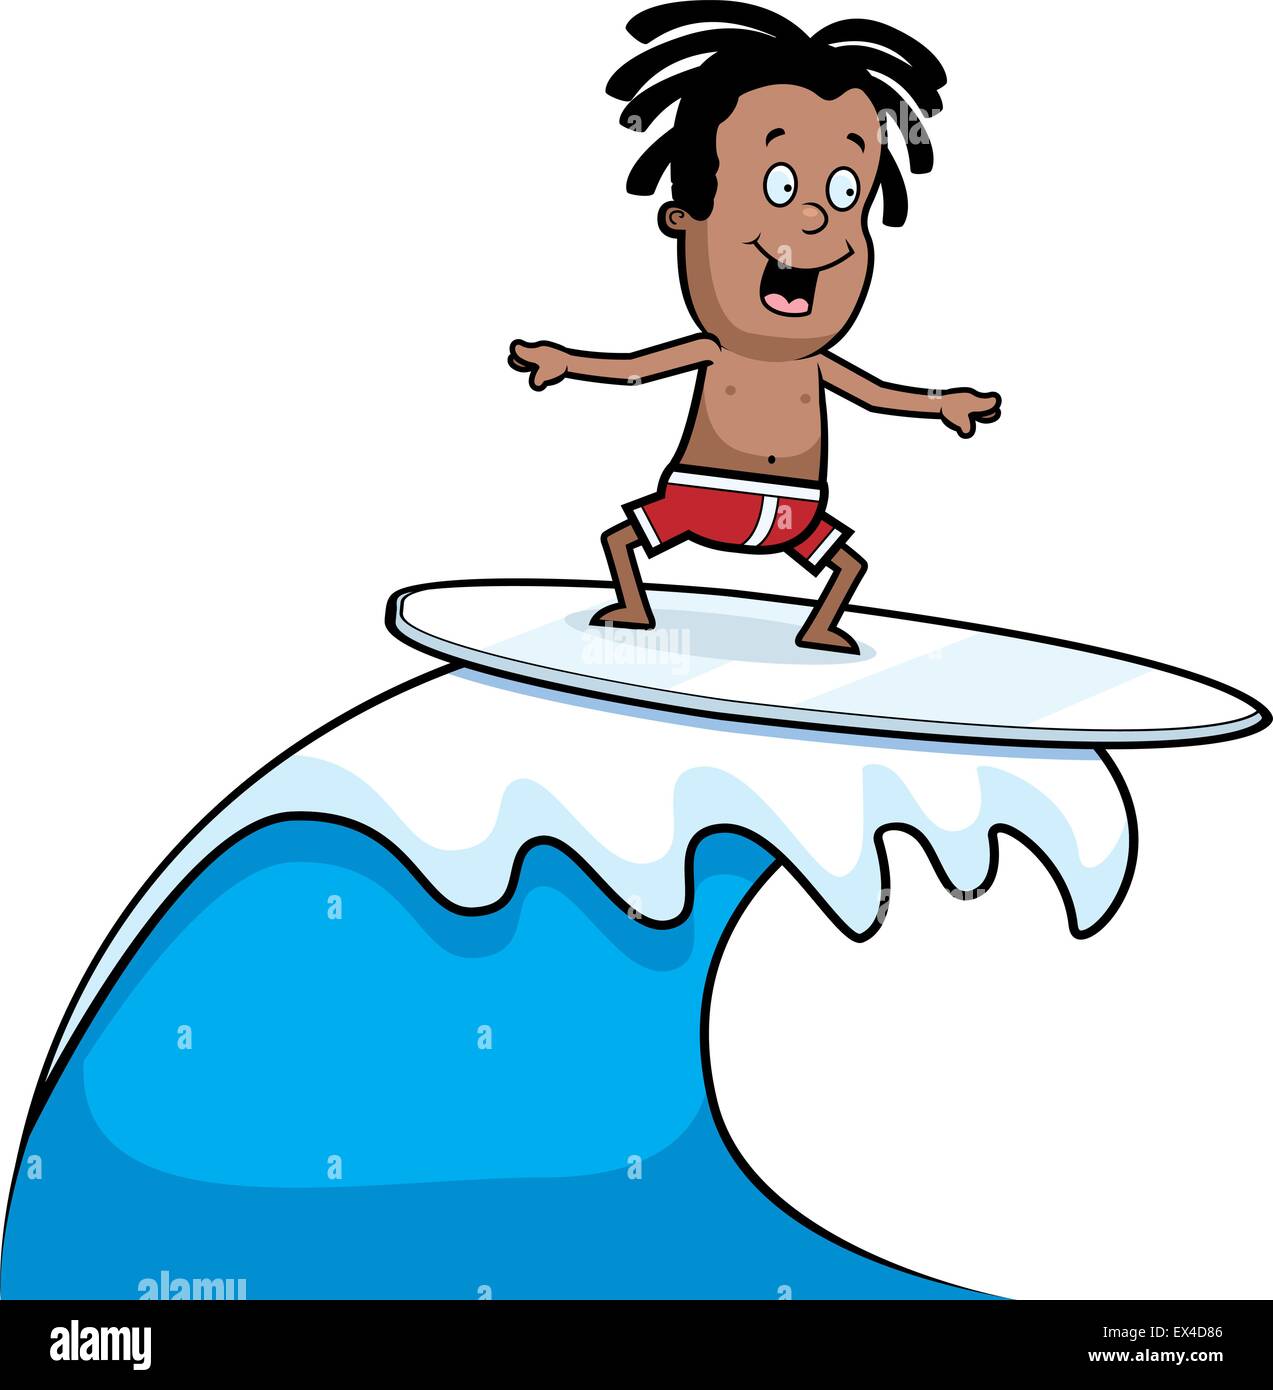 Ein glückliches Cartoon Kind Surfen auf einer Welle. Stock Vektor